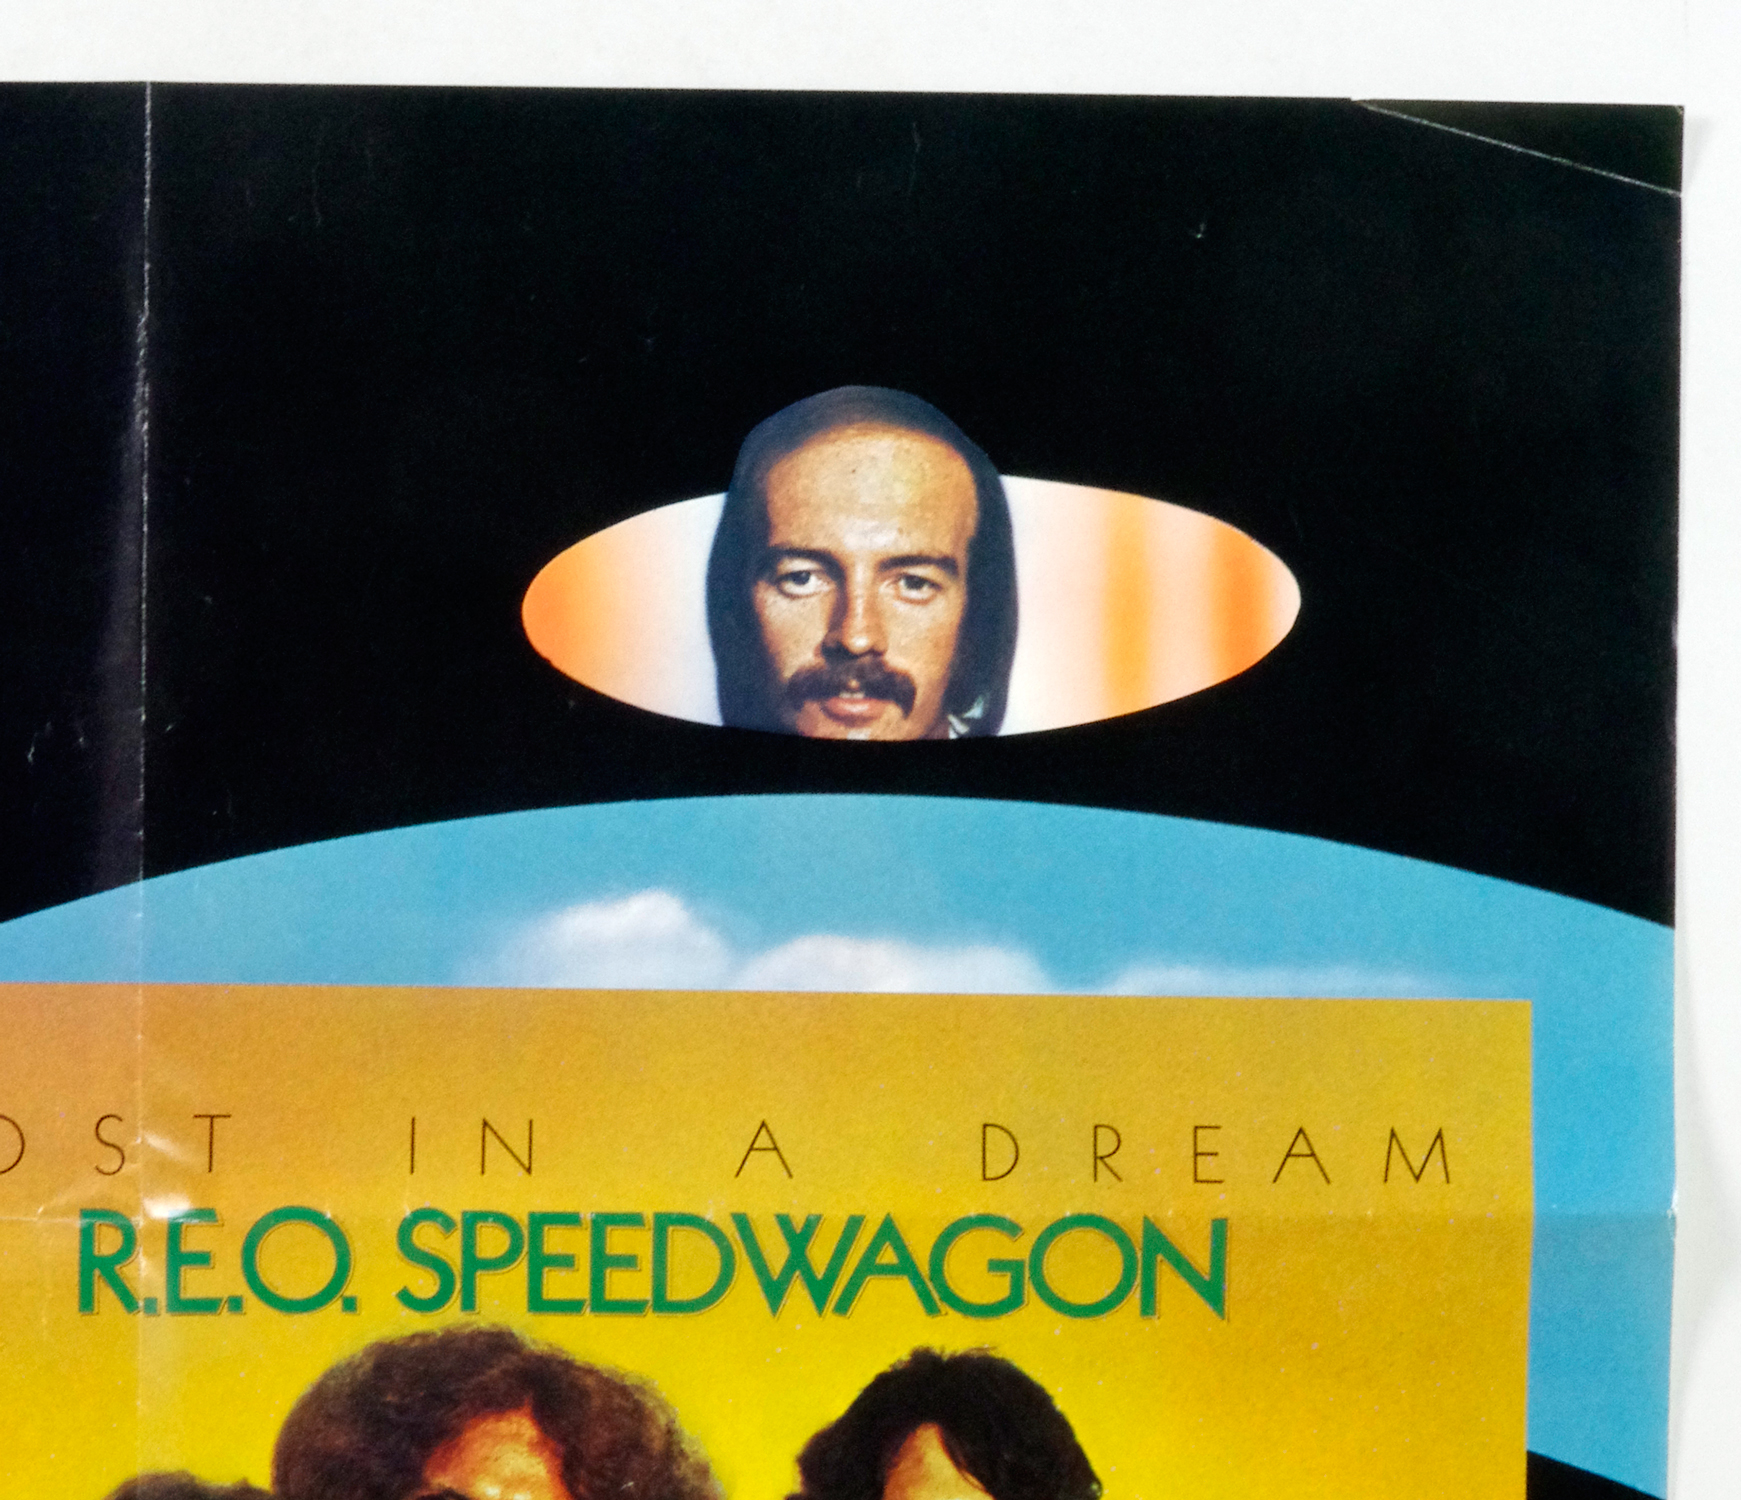 REO Speedwagon Poster 1974 Lost In A Dream Album Promo 22 x 33